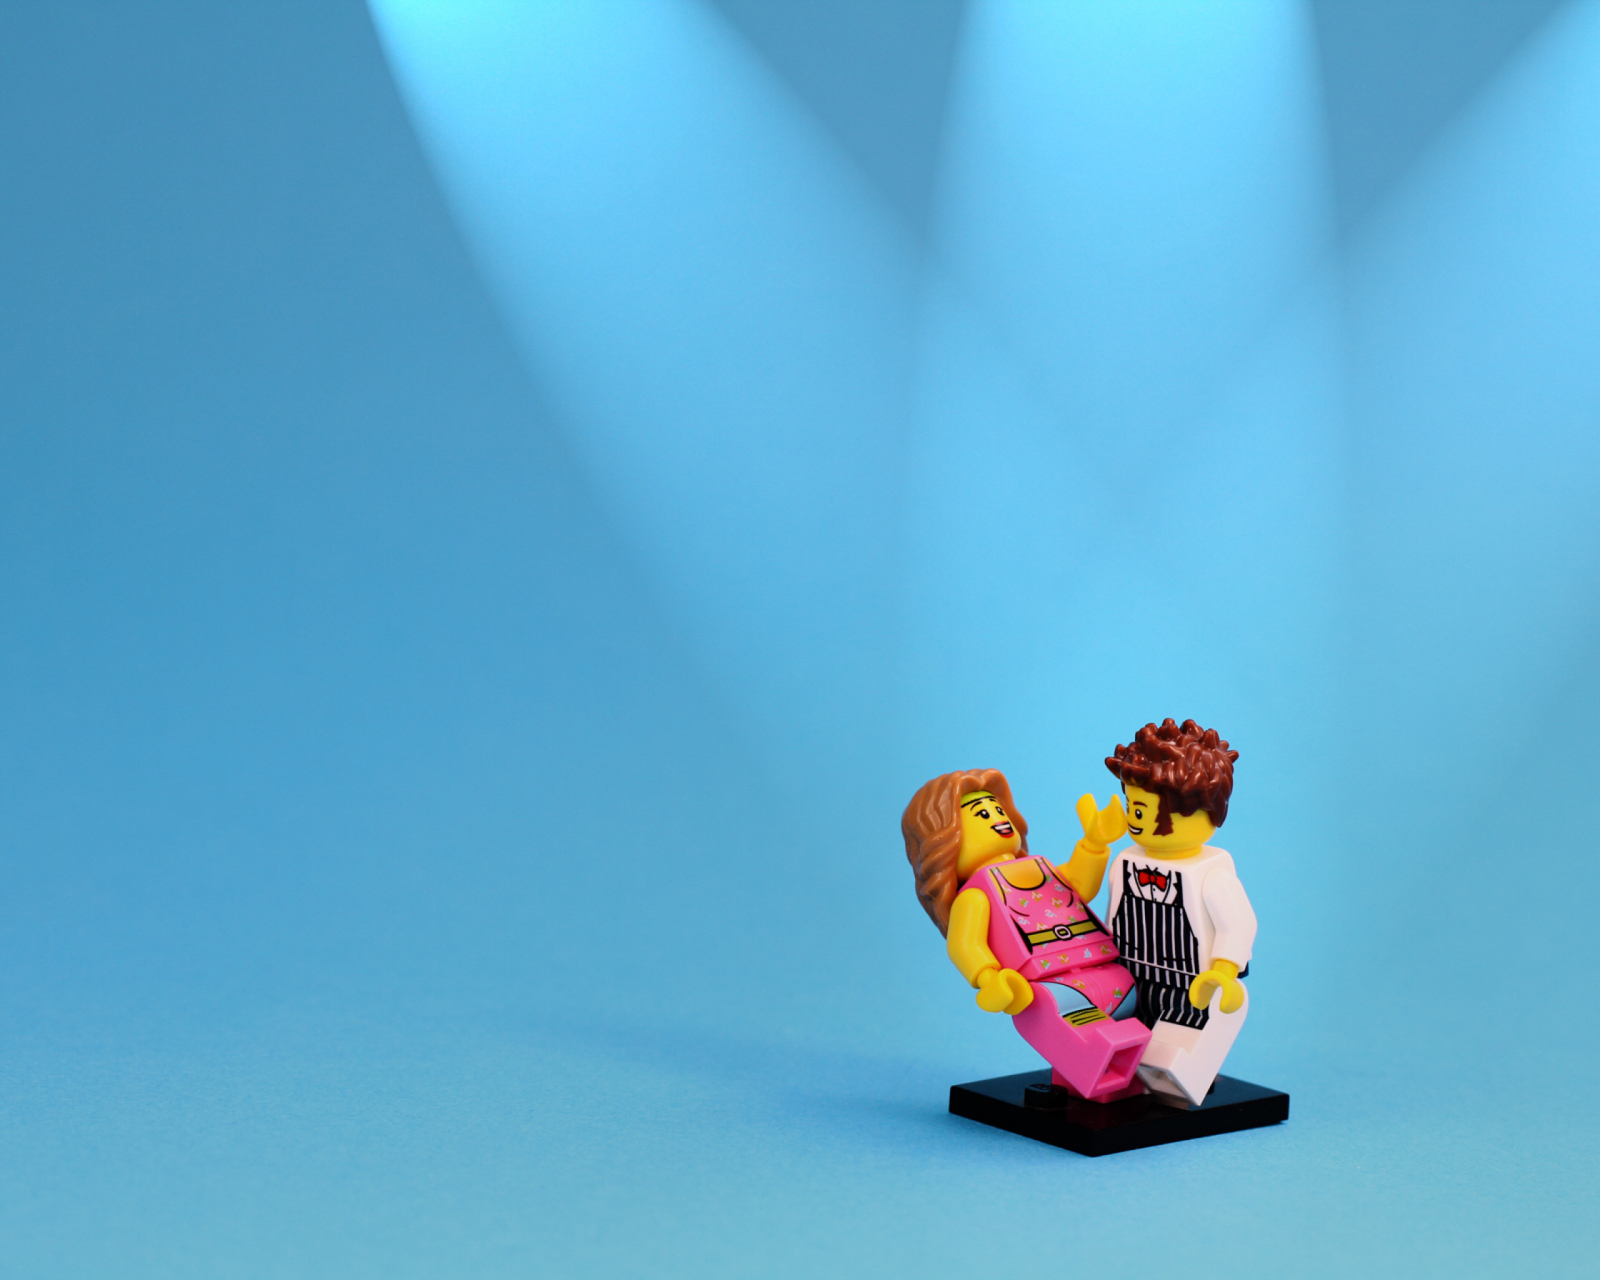 Обои Dance With Me Lego 1600x1280